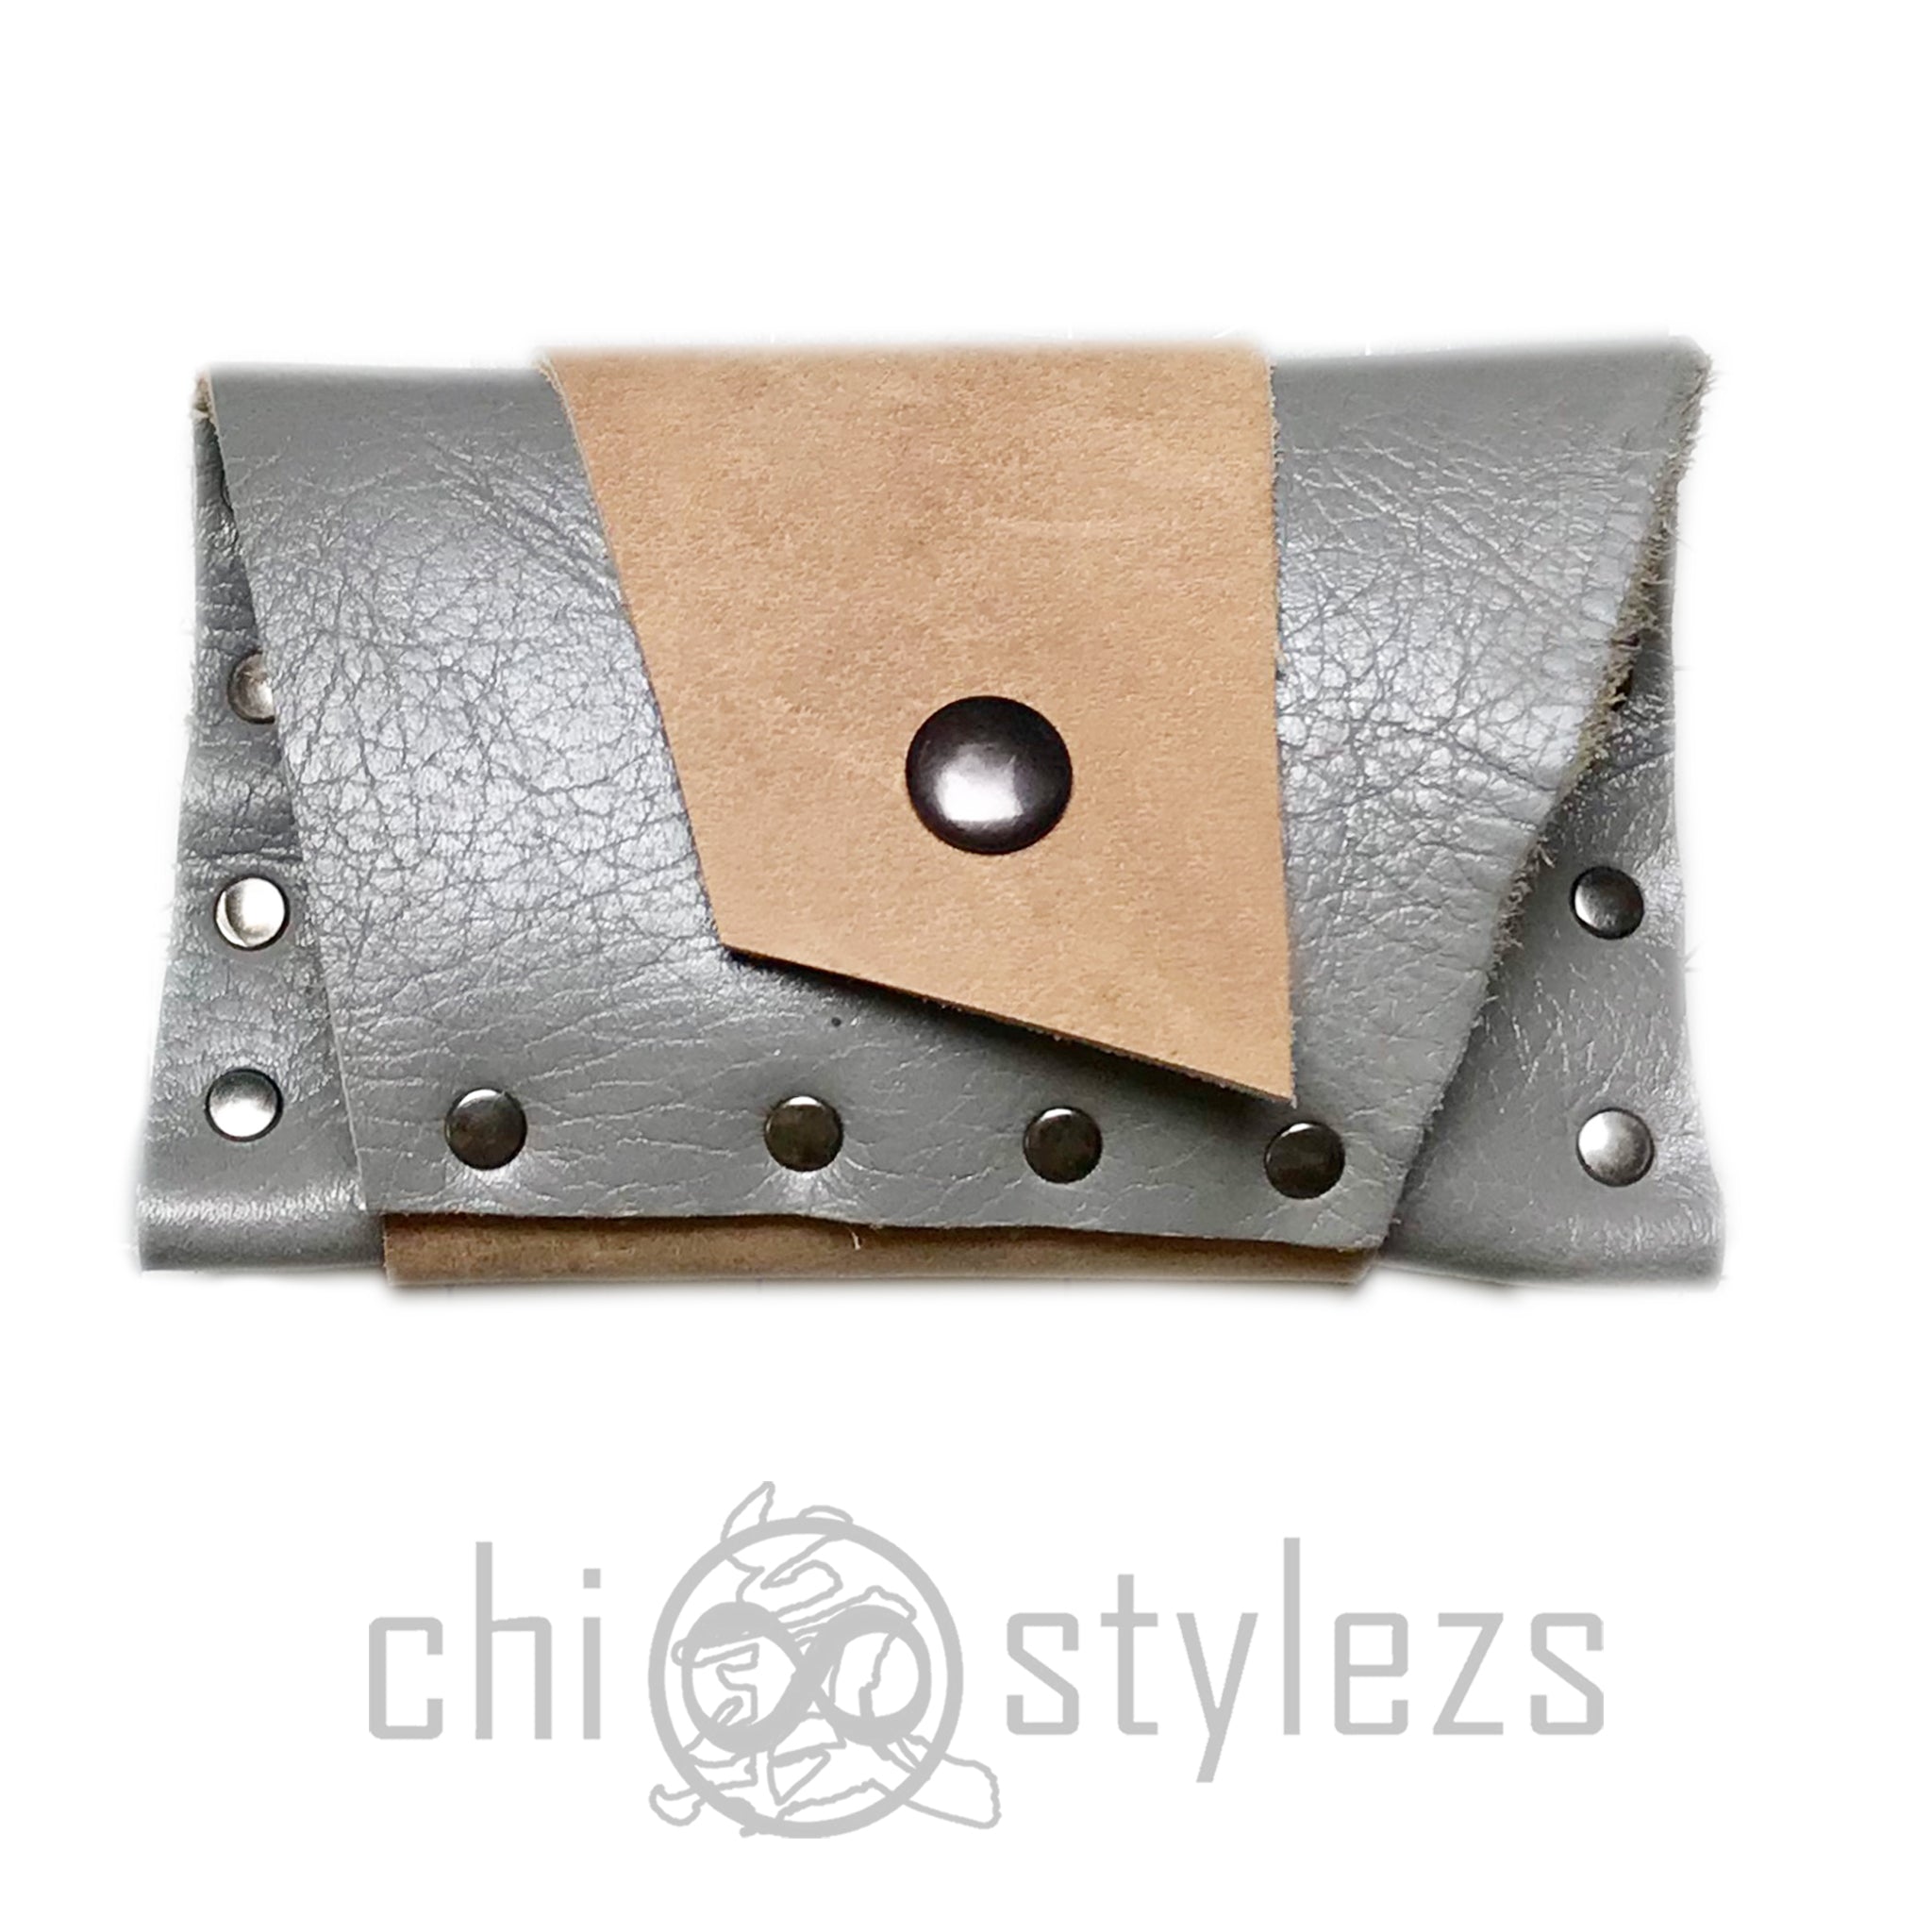 Chi Stash Mini Wallet Classique Attachable (Custom Request)